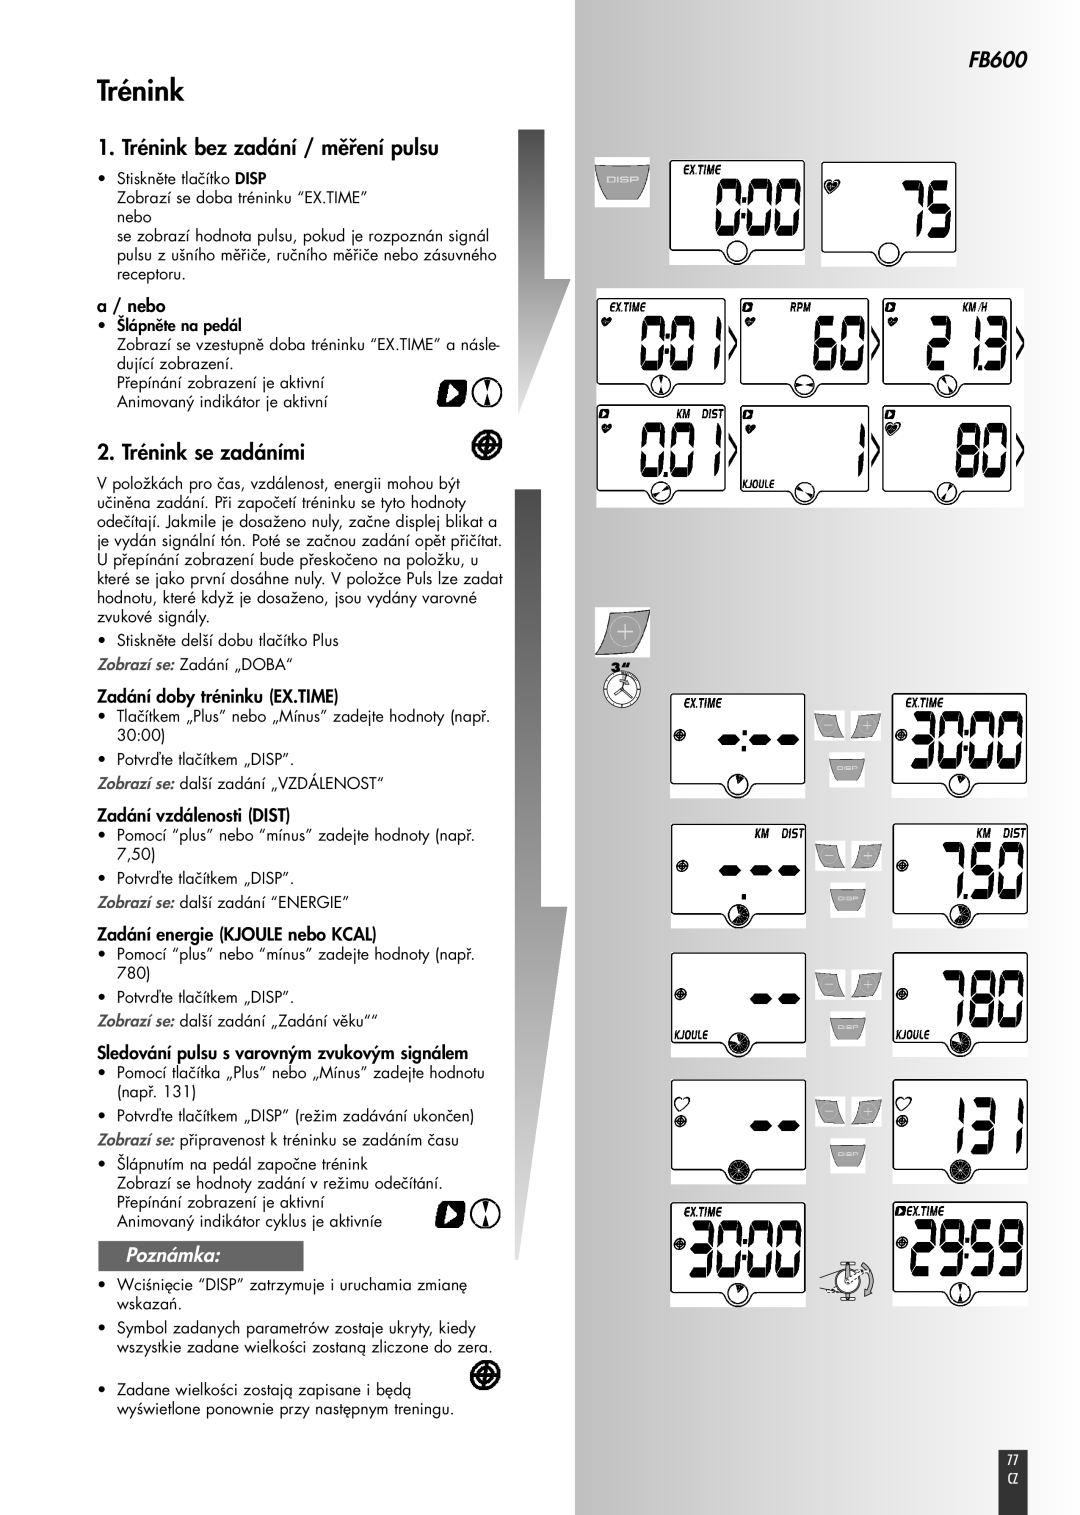 Kettler FB600 manual 1. Trénink bez zadání / měření pulsu, 2. Trénink se zadáními, Poznámka, a / nebo 